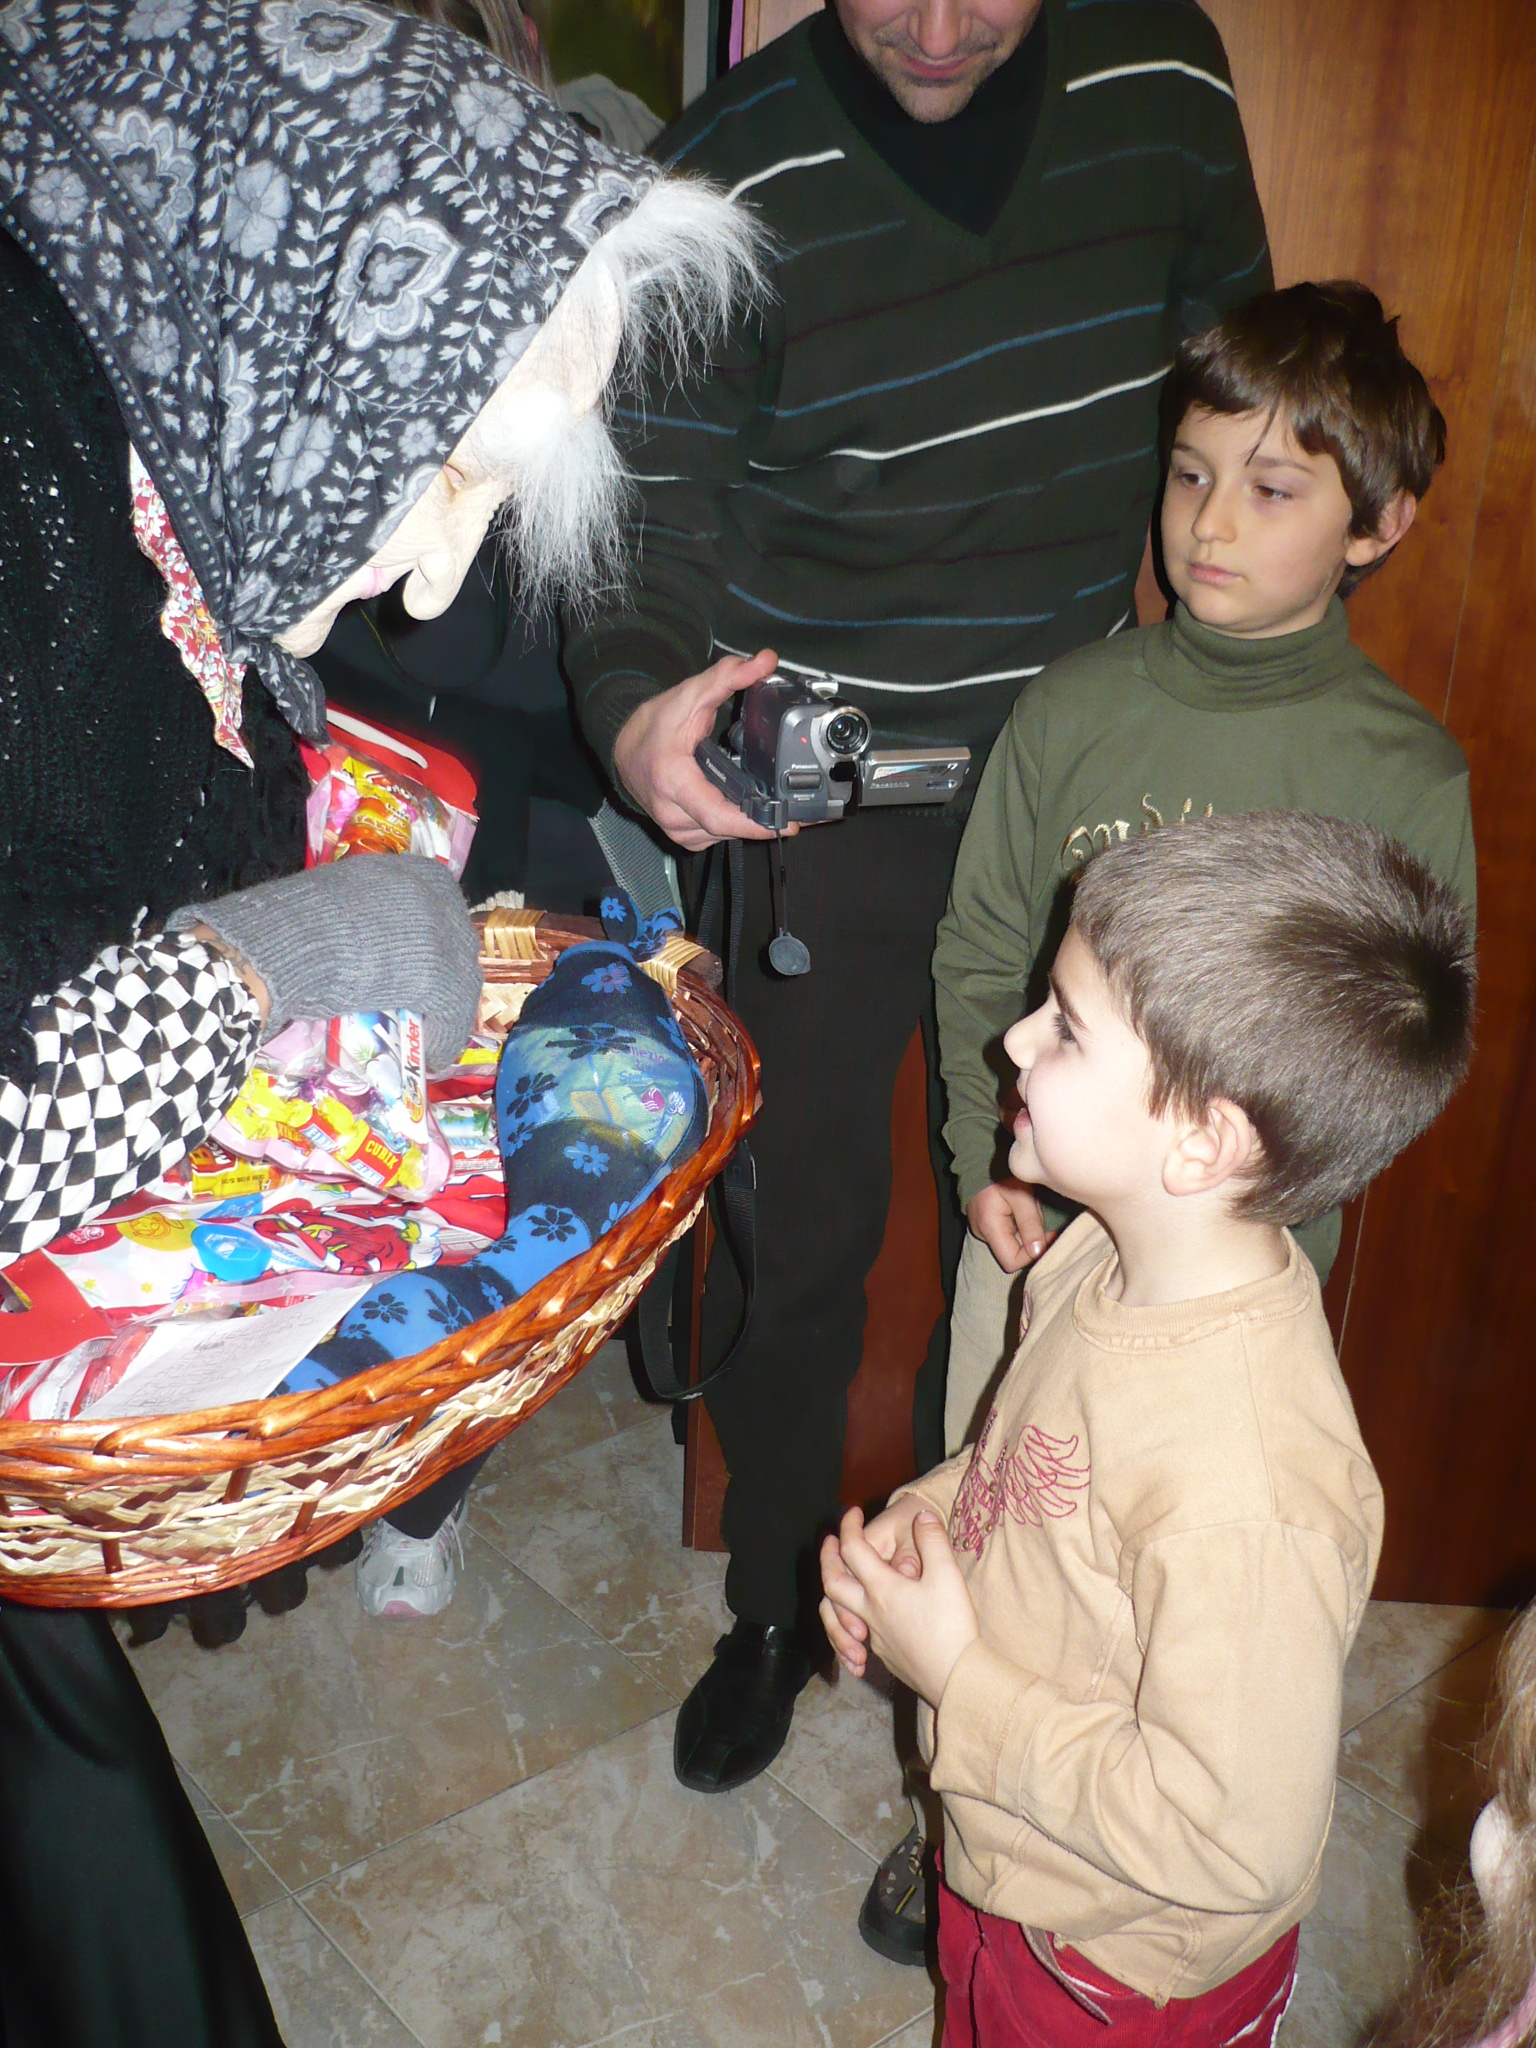 La Befana: a velhinha que traz doces para as crianças no dia 6 de janeiro